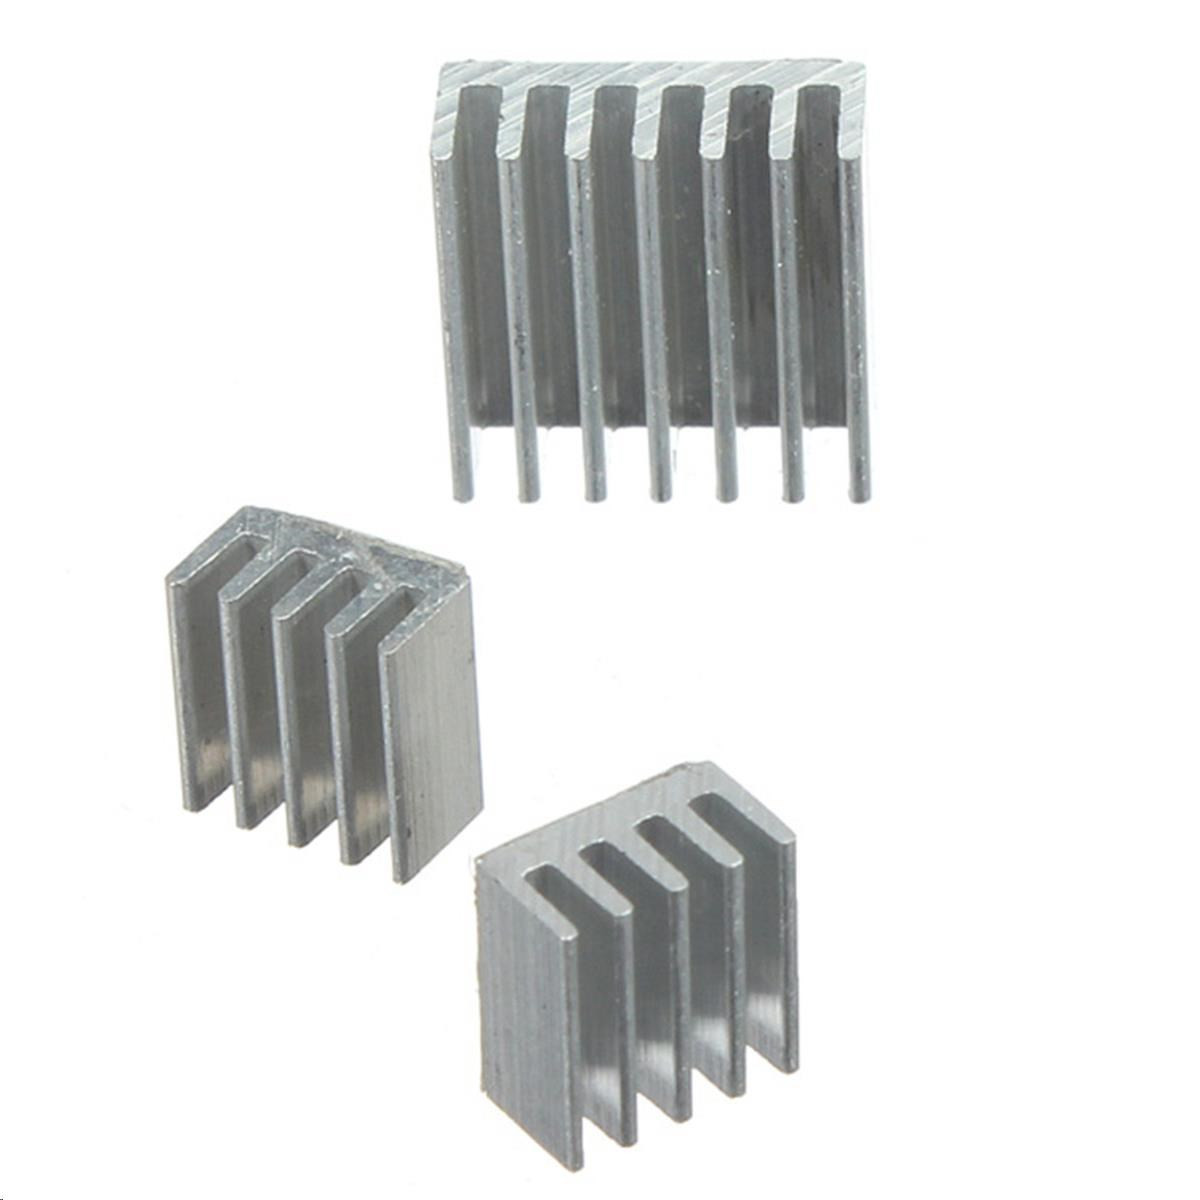 0128 Kühlkörper Aluminium 10x10x10mm silber Raspberry PI Arduino 2 Stück 